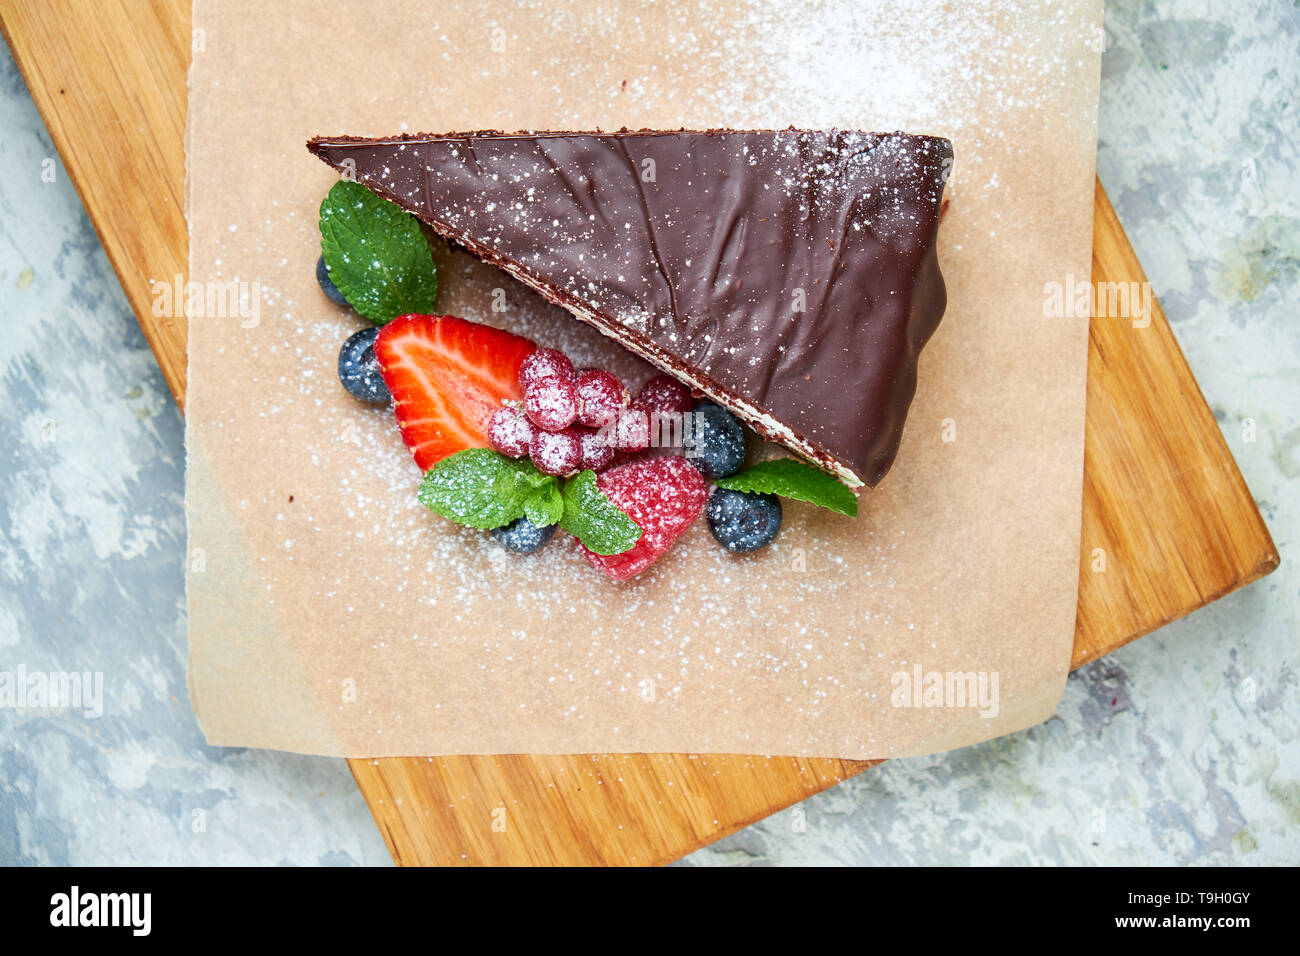 Una fetta di torta al cioccolato decorata con frutti di bosco su una tavola di legno. Grigio sfondo a trama. Bellissimi piatti di servizio. Il dessert. La catena alimentare Foto Stock